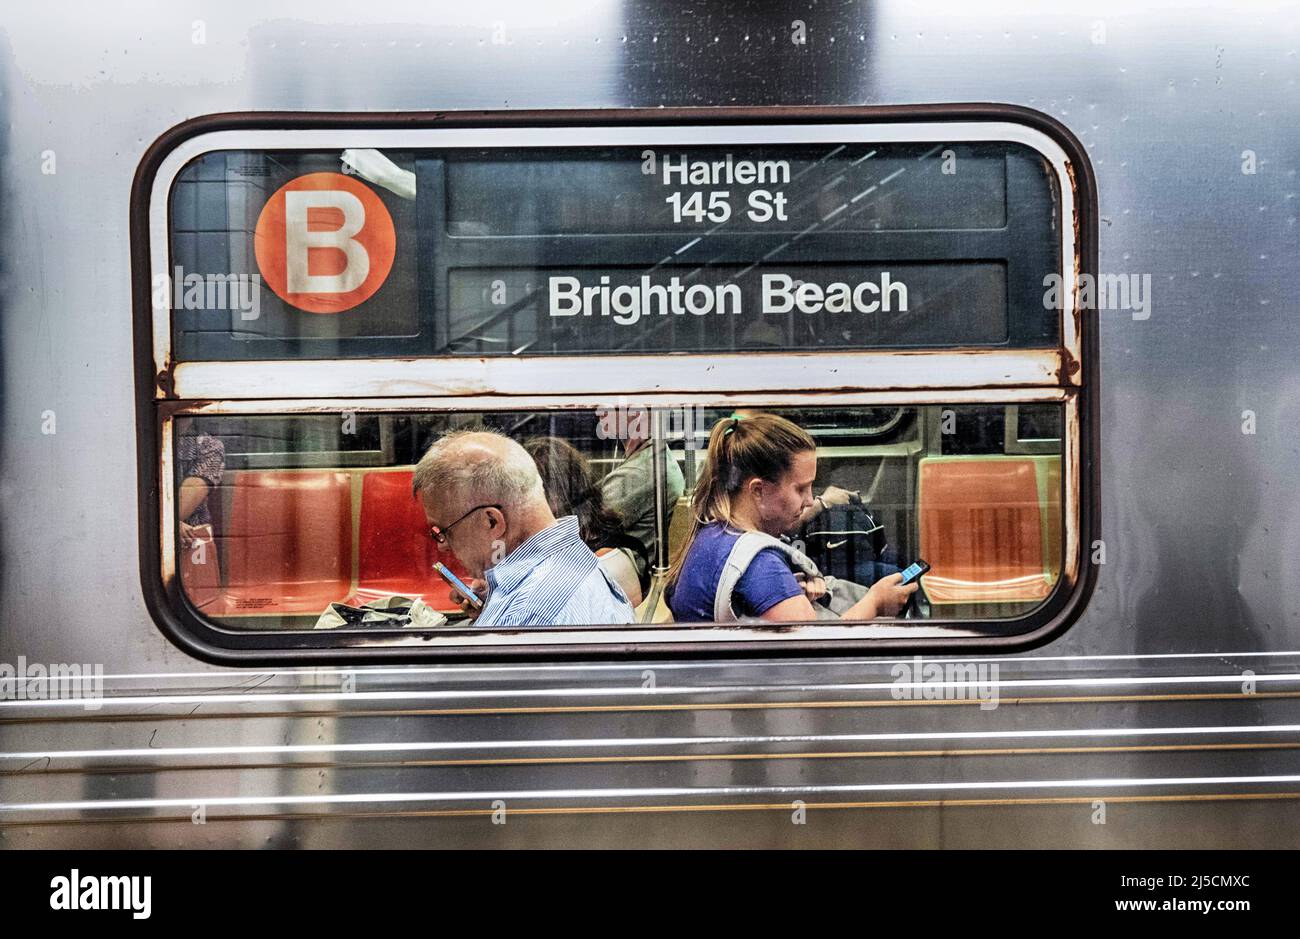 USA, New York, 20 septembre 2019. Passagers du train B à une station de métro de Brooklyn le 20 septembre 2019. [traduction automatique] Banque D'Images